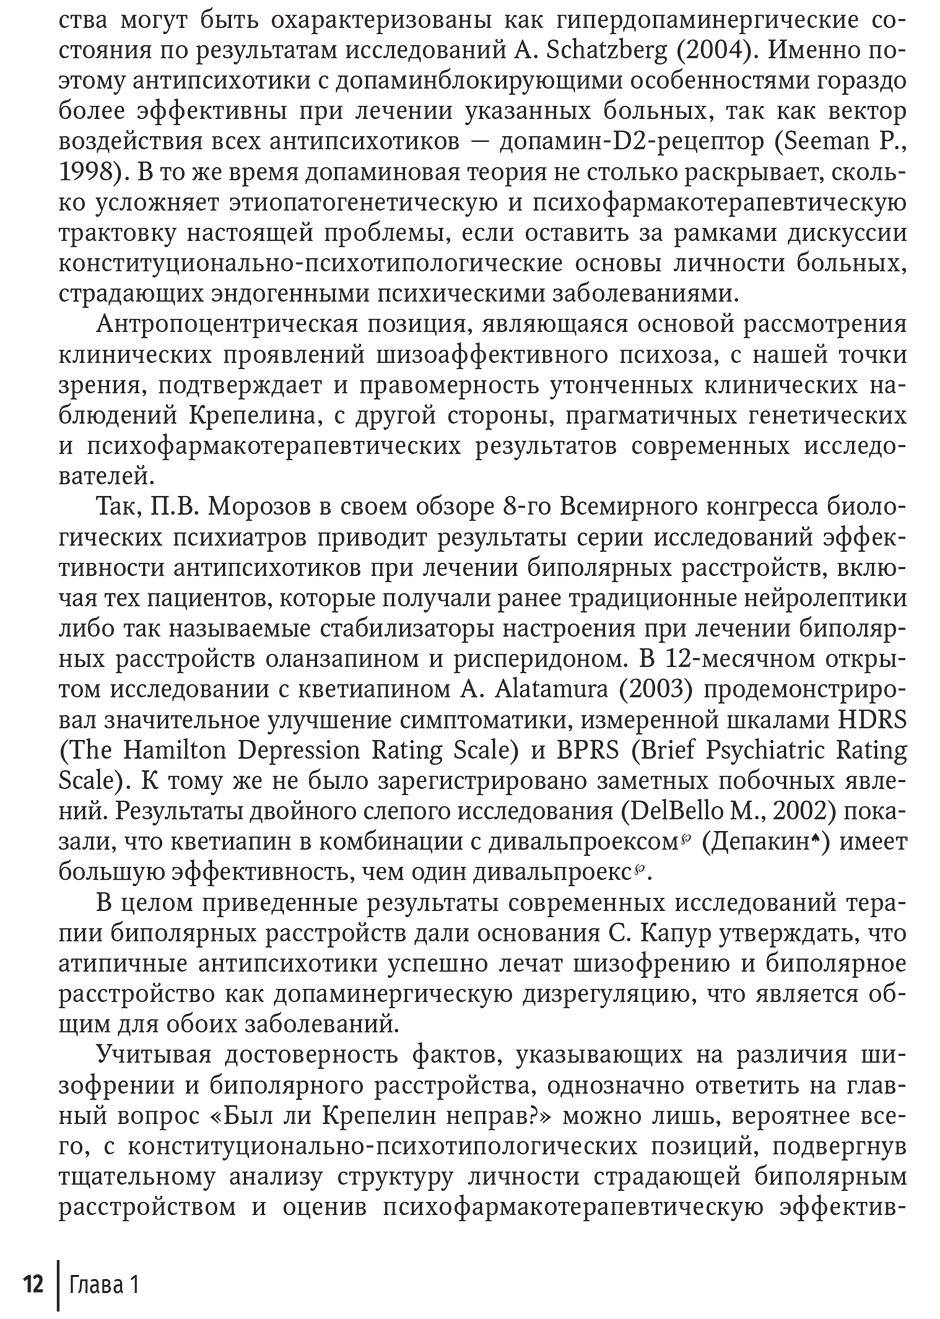 Пример страницы из книги "Шизоаффективный психоз: руководство для врачей" - Боев И. В.